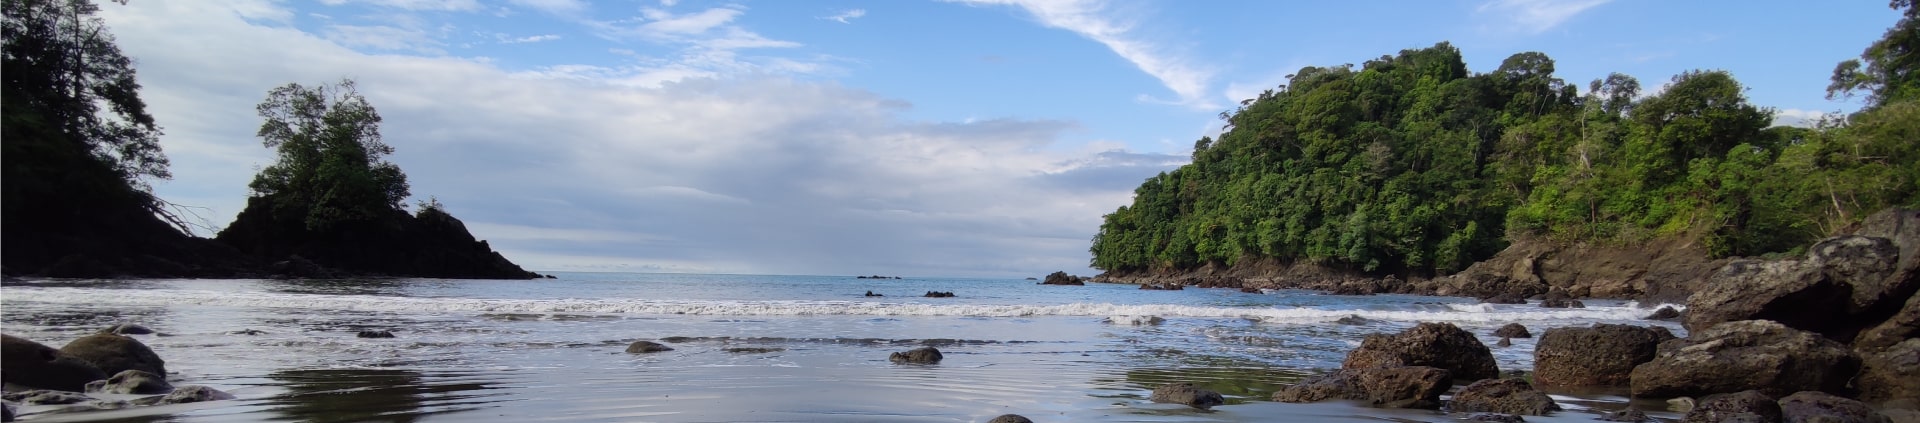 Vista al oceano pacífico desde las playas de Nuquí en Colombia